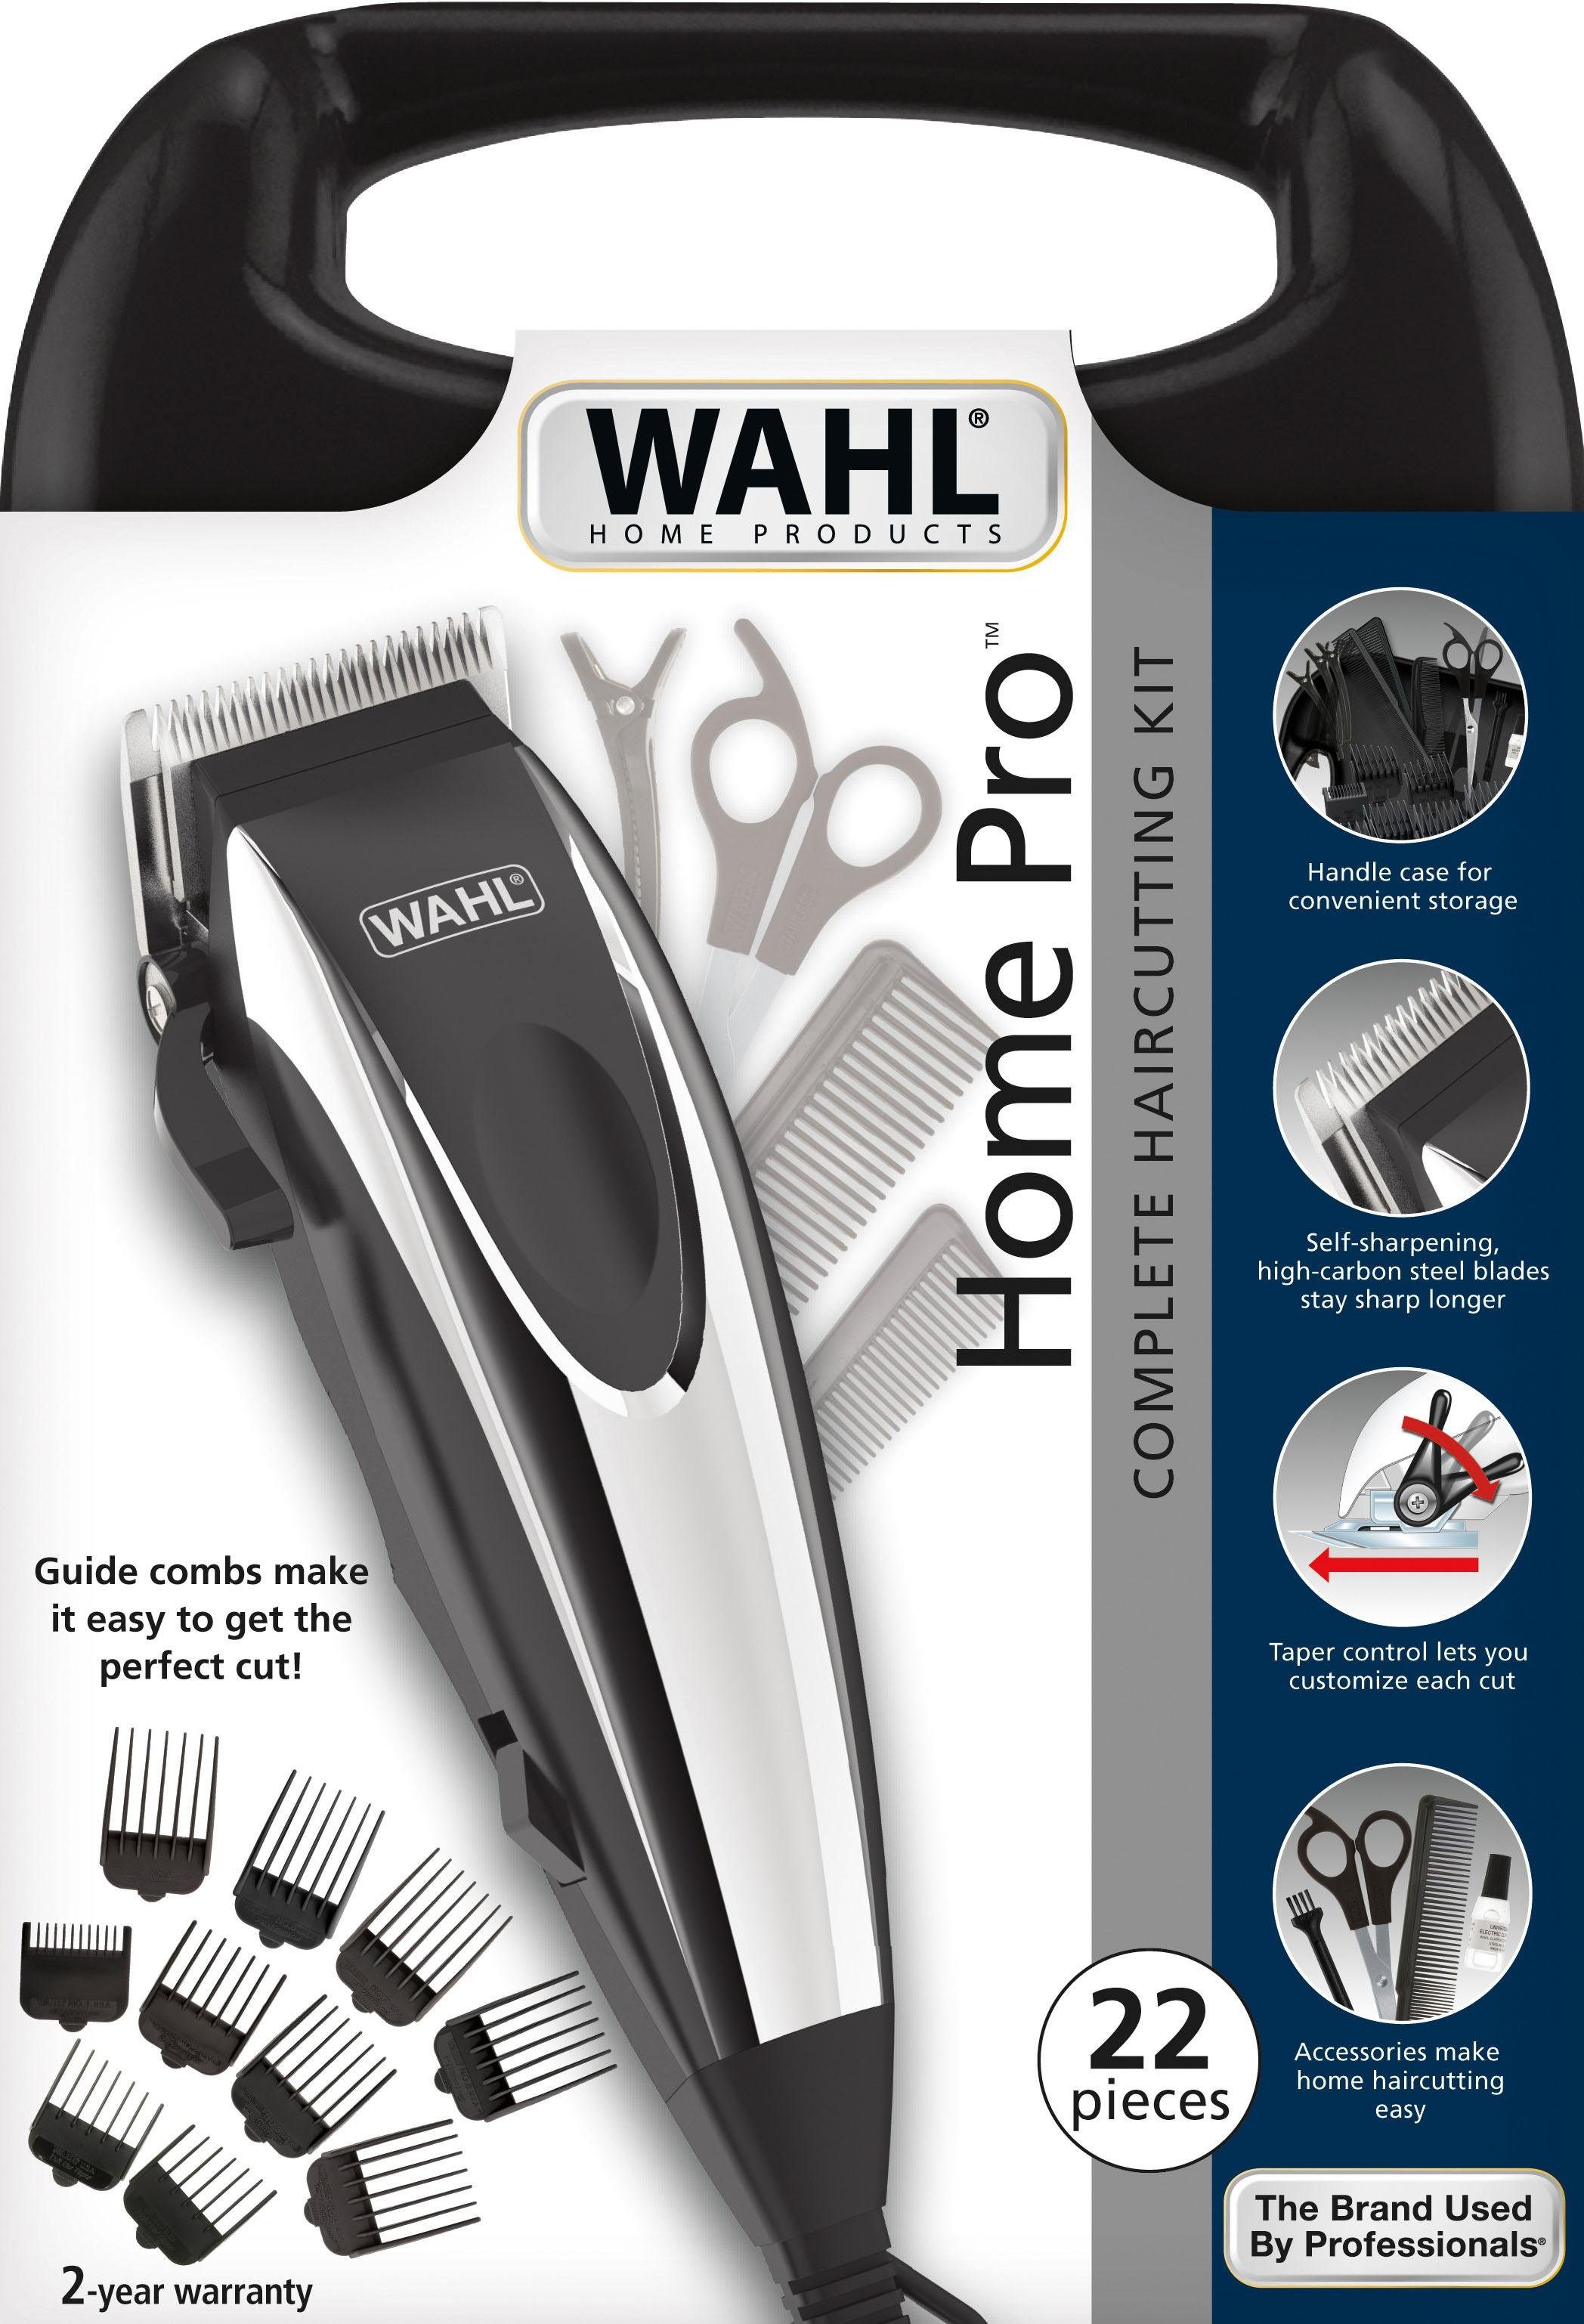 Haar- Wahl und Pro, 09243-2616 komplettes Bartschneider Home Friseur Kit